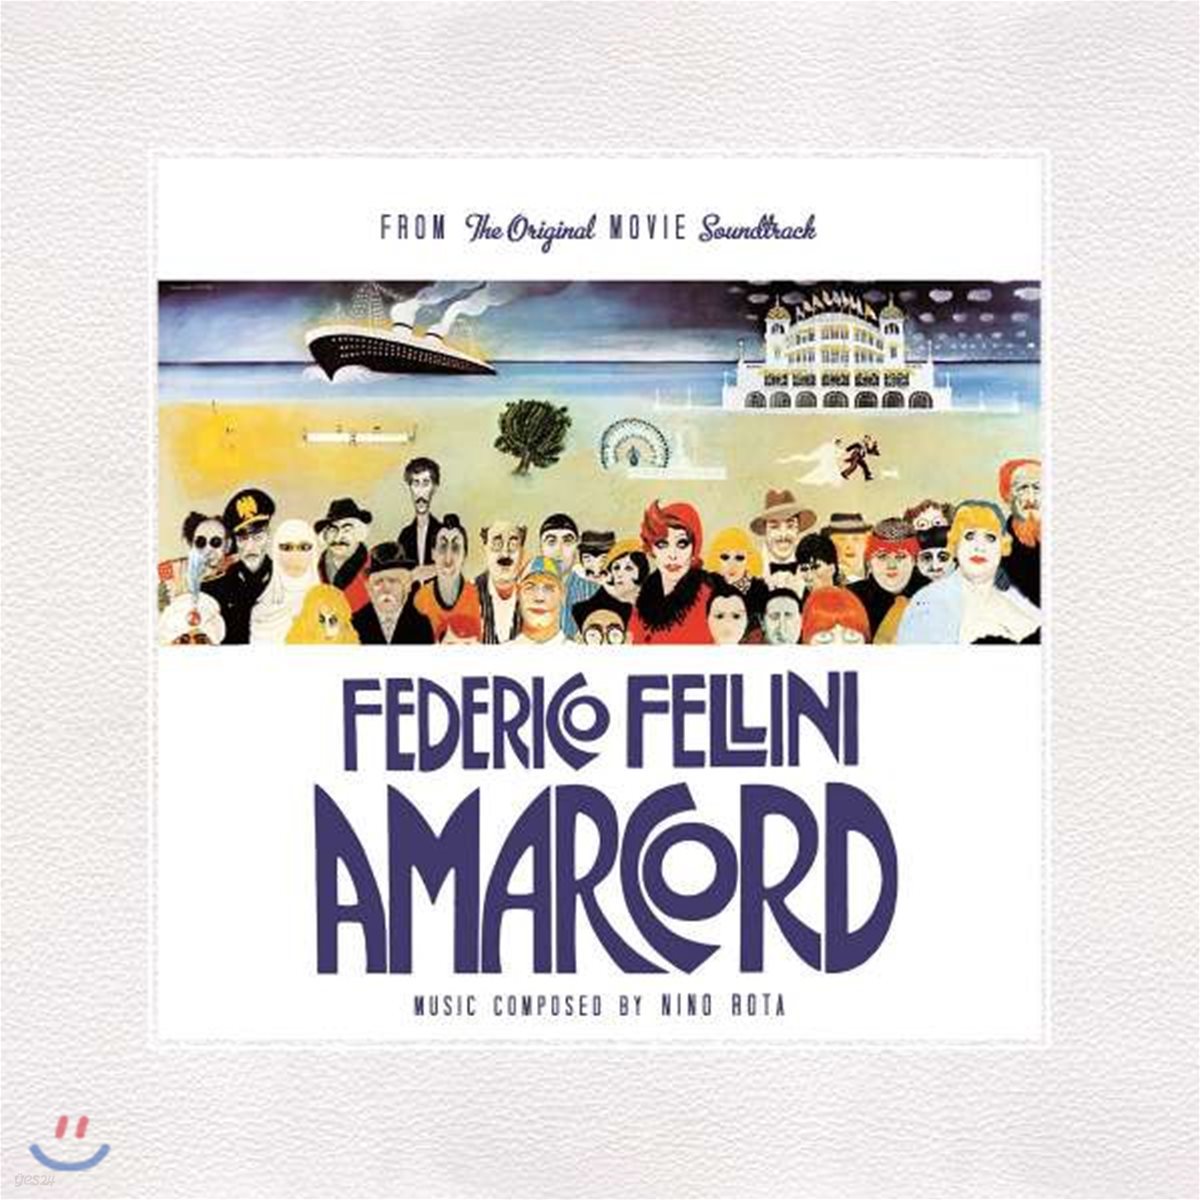 페데리코 펠리니의 &#39;아마코드&#39; 영화음악 (Federico Fellini&#39;s Amarcord OST by Nino Rota 니노 로타) [LP]